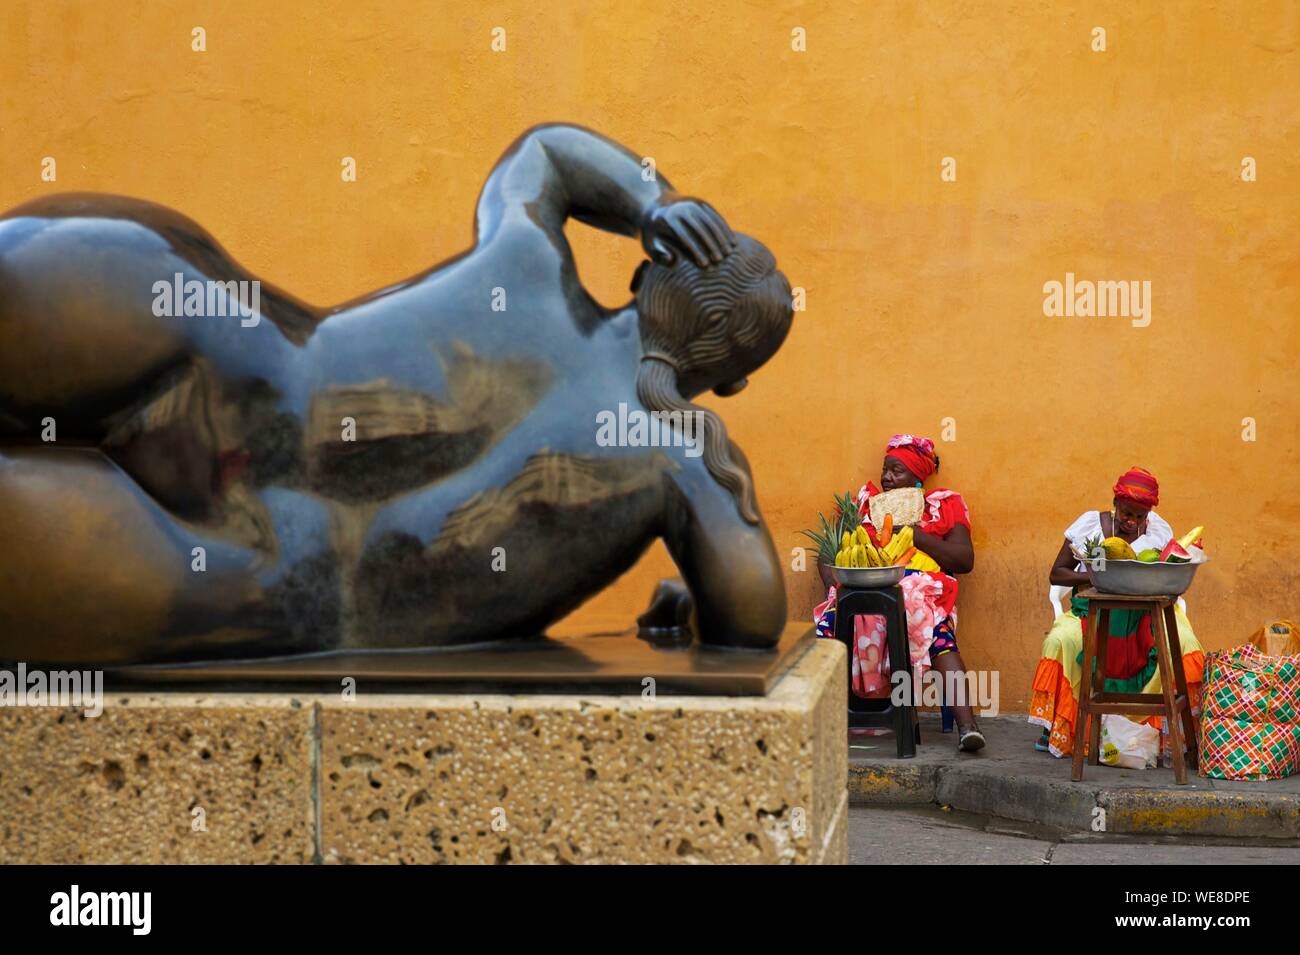 La Colombie, Département de Bolivar, Carthagène, inscrite au patrimoine mondial de l'UNESCO, place Santo Domingo, vendeurs de fruits en face d'une sculpture de Botero Banque D'Images